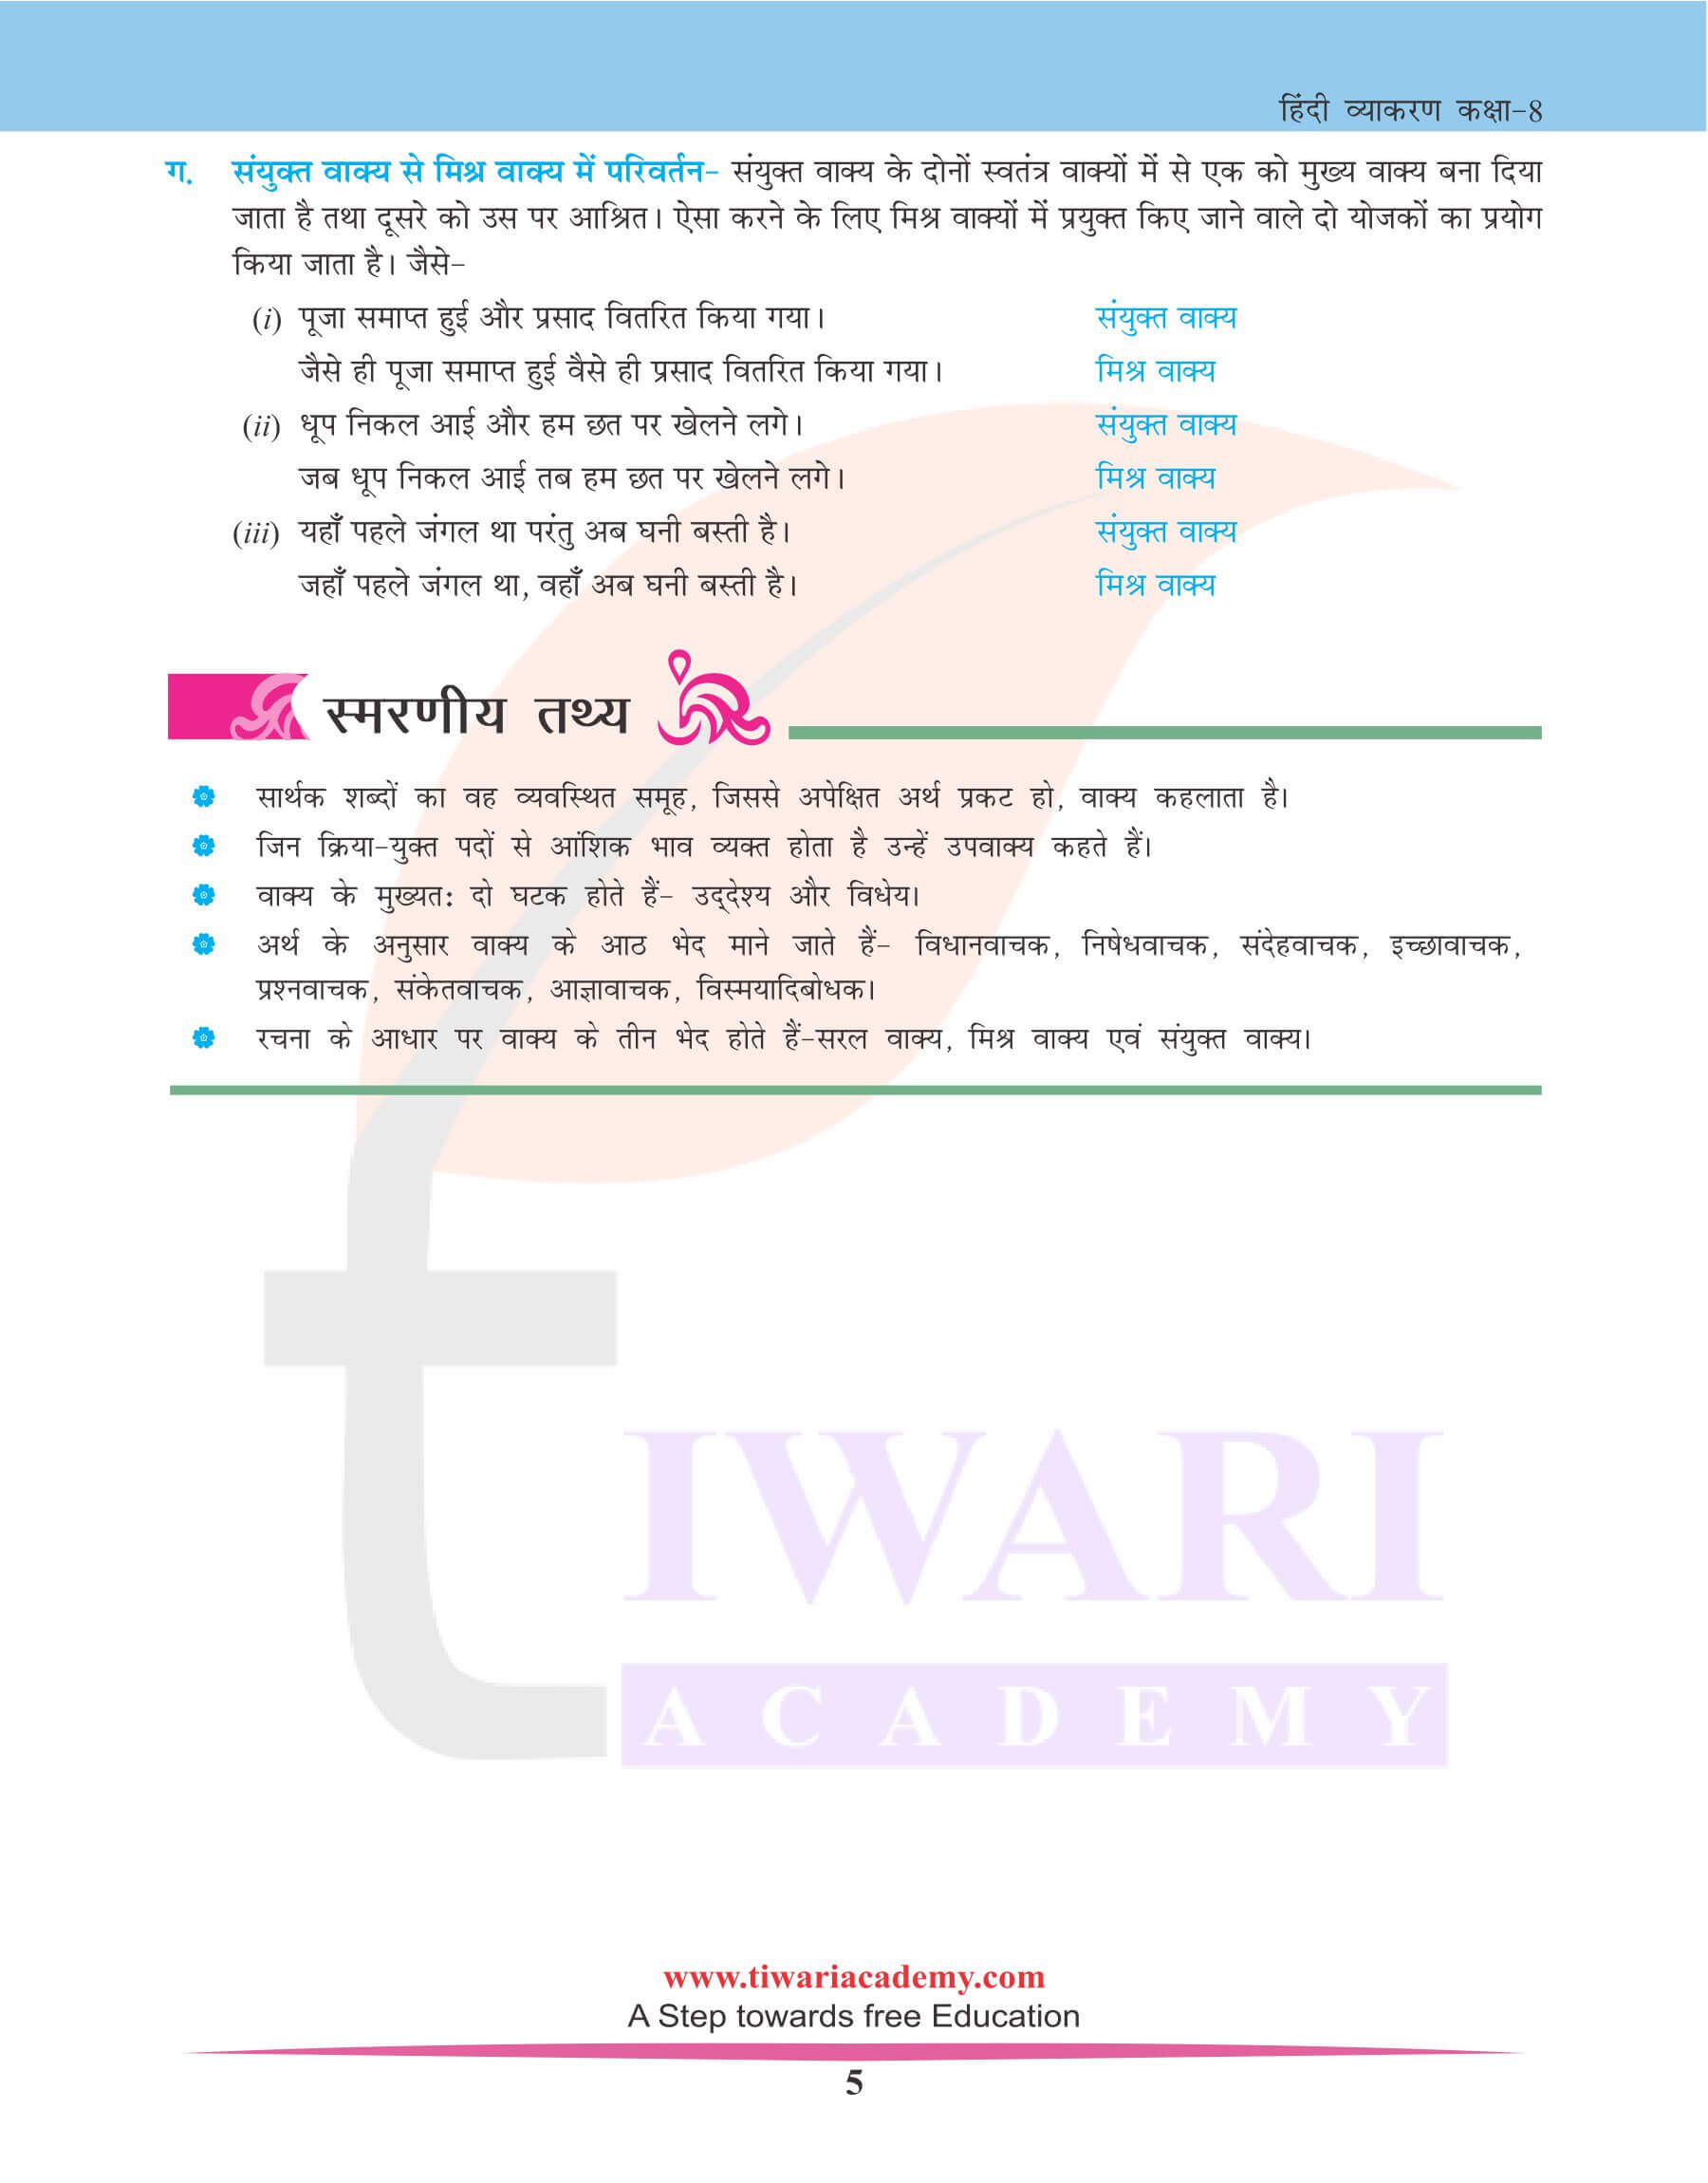 कक्षा 8 हिंदी व्याकरण अध्याय 18 वाक्य विचार नोट्स